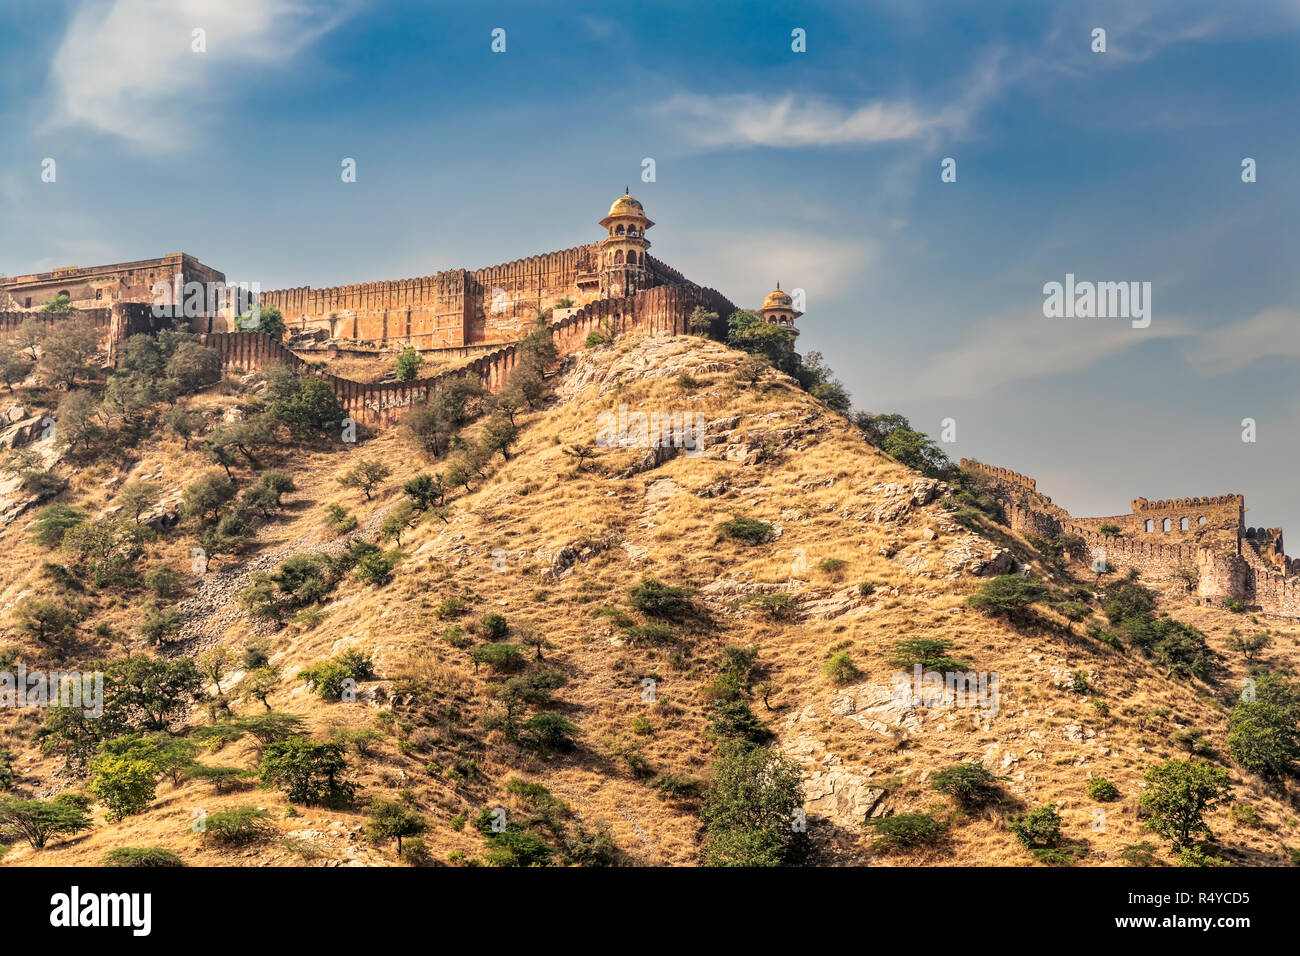 Blick von der Amer Fort in Amer, Rajasthan, Indien, 11 km von Jaipur, der Hauptstadt von Rajasthan. Es ist die wichtigste touristische Attraktion in Jaipur Stockfoto